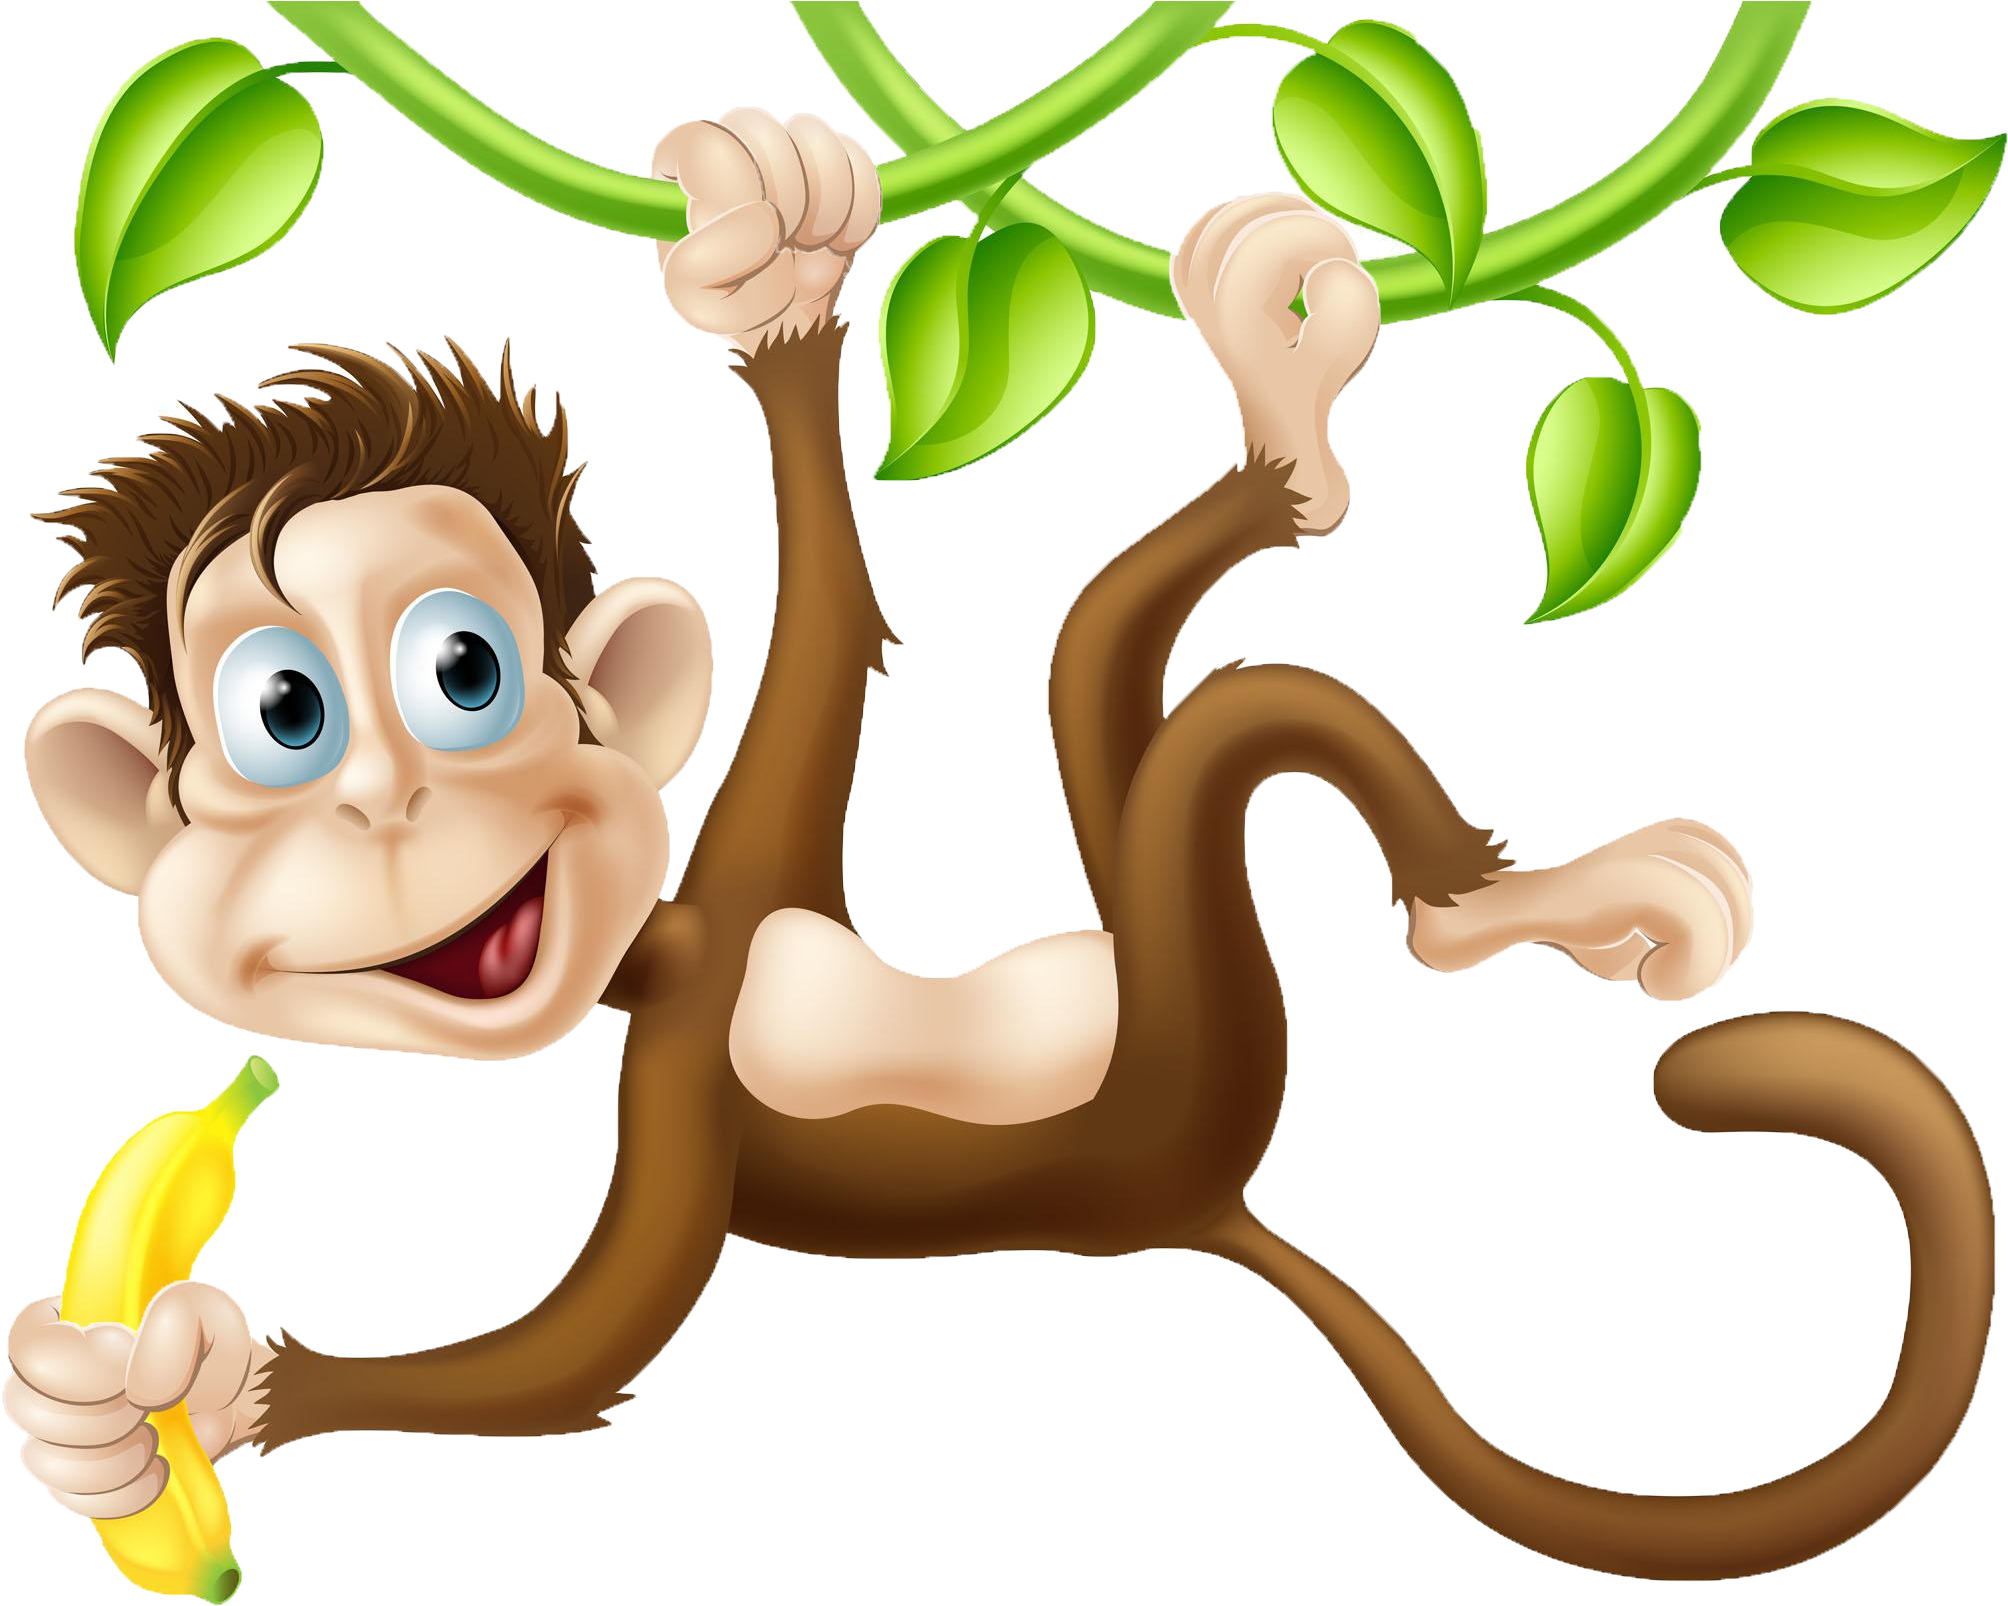 Chimpanzee Monkey Cartoon Clip Art - Monkeys Swinging In The Tree (2107x1658)